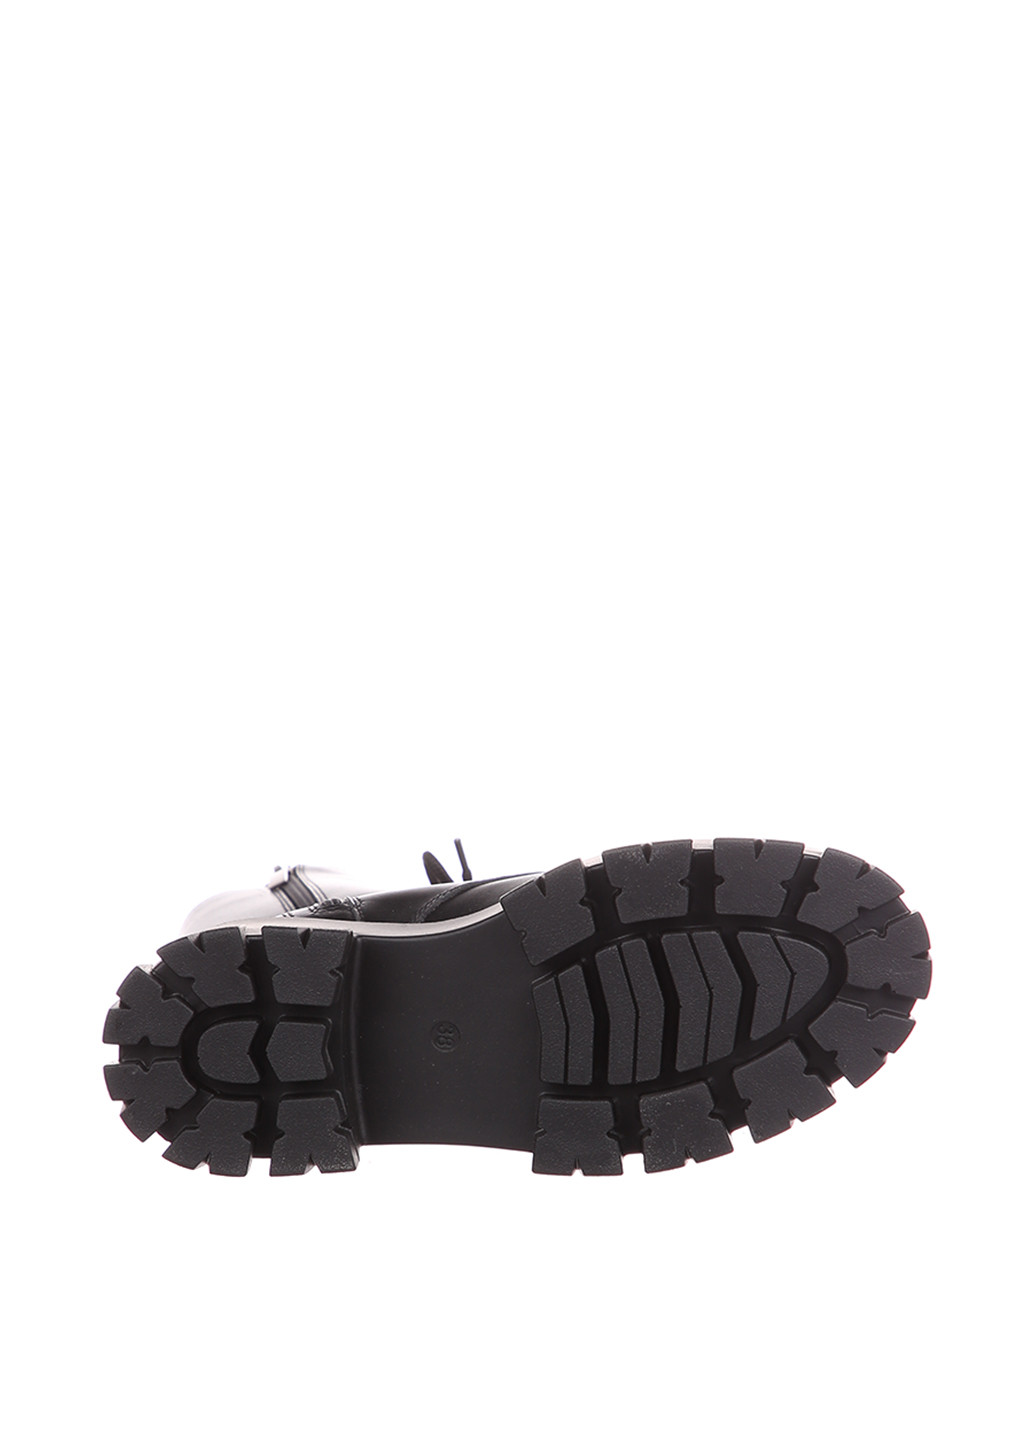 Зимние ботинки LaLeLi со шнуровкой, на тракторной подошве